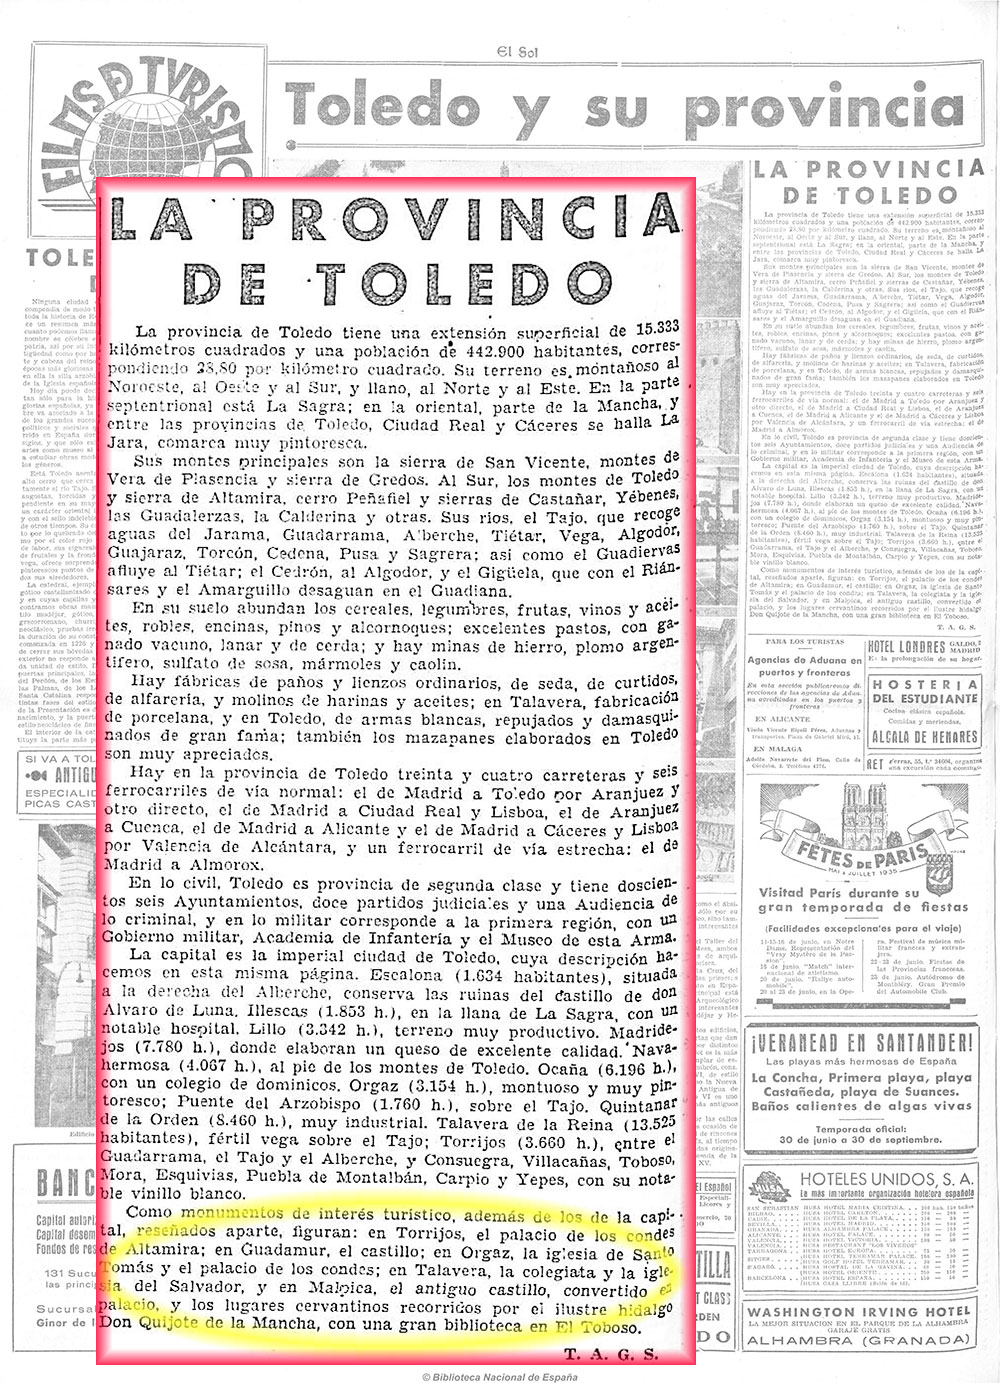 El Sol 13-6-1935. La provincia de Toledo